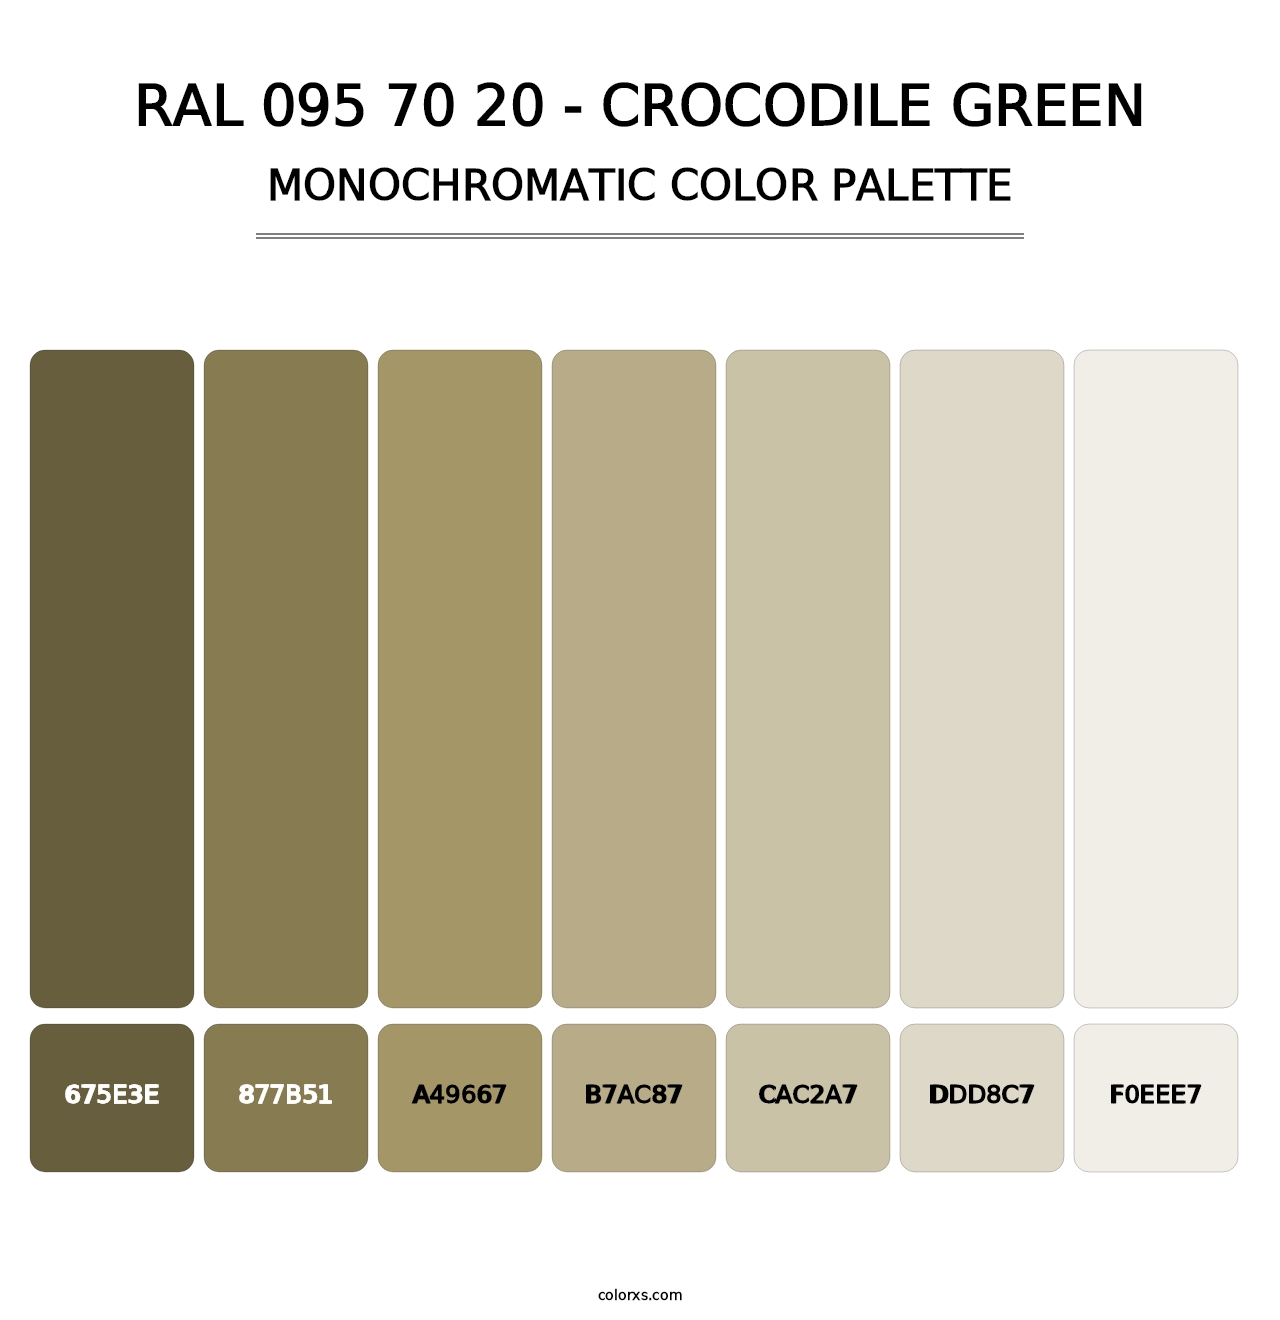 RAL 095 70 20 - Crocodile Green - Monochromatic Color Palette